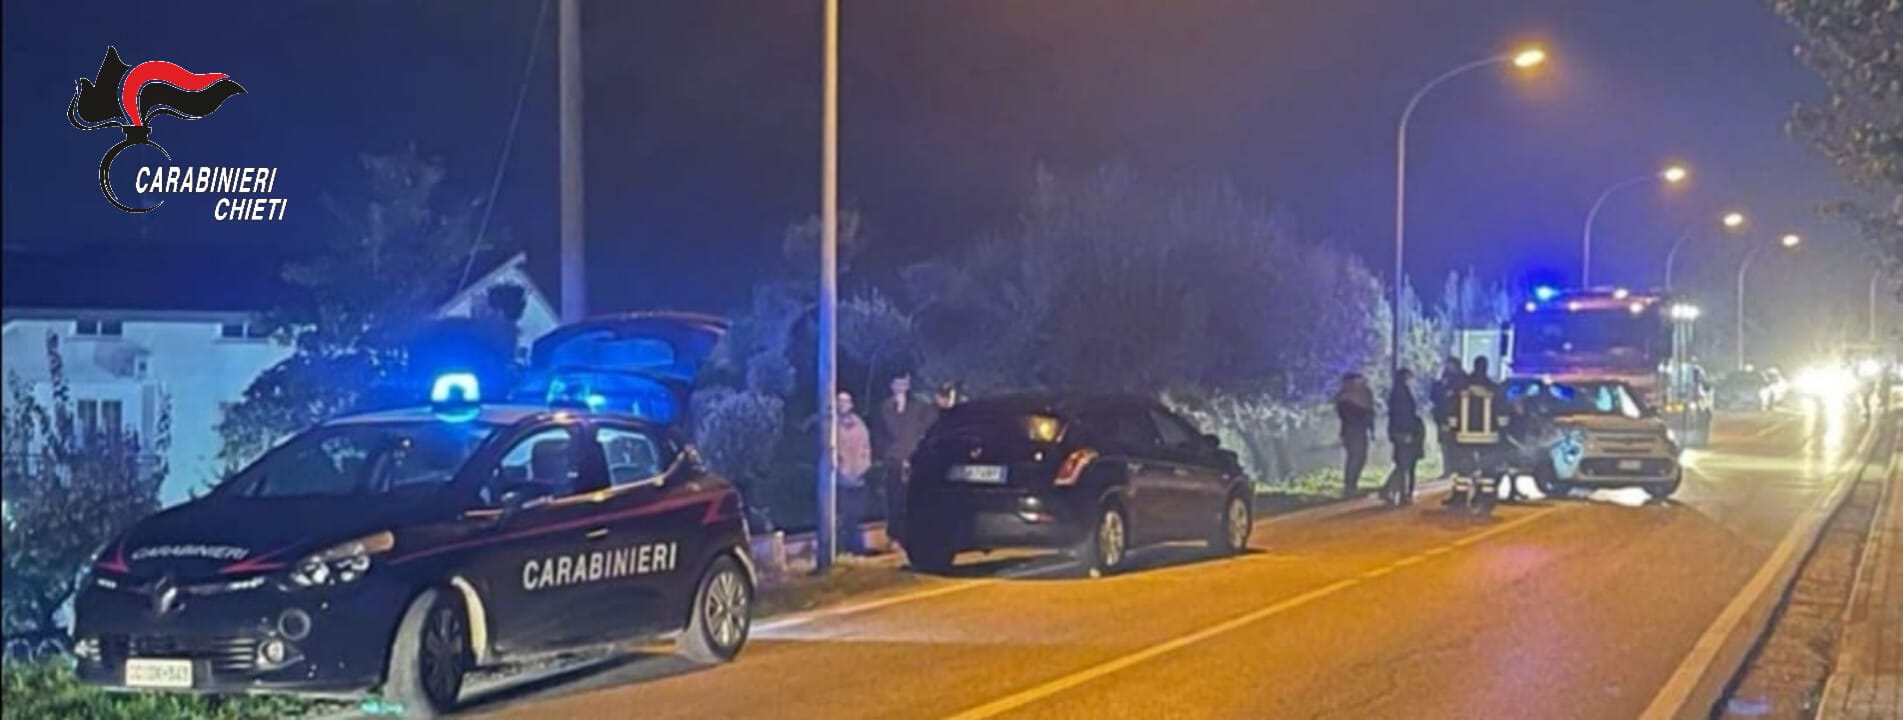 Mozzagrogna, in stato di grave ebbrezza provoca un incidente stradale, denunciato dai carabinieri un 50enne